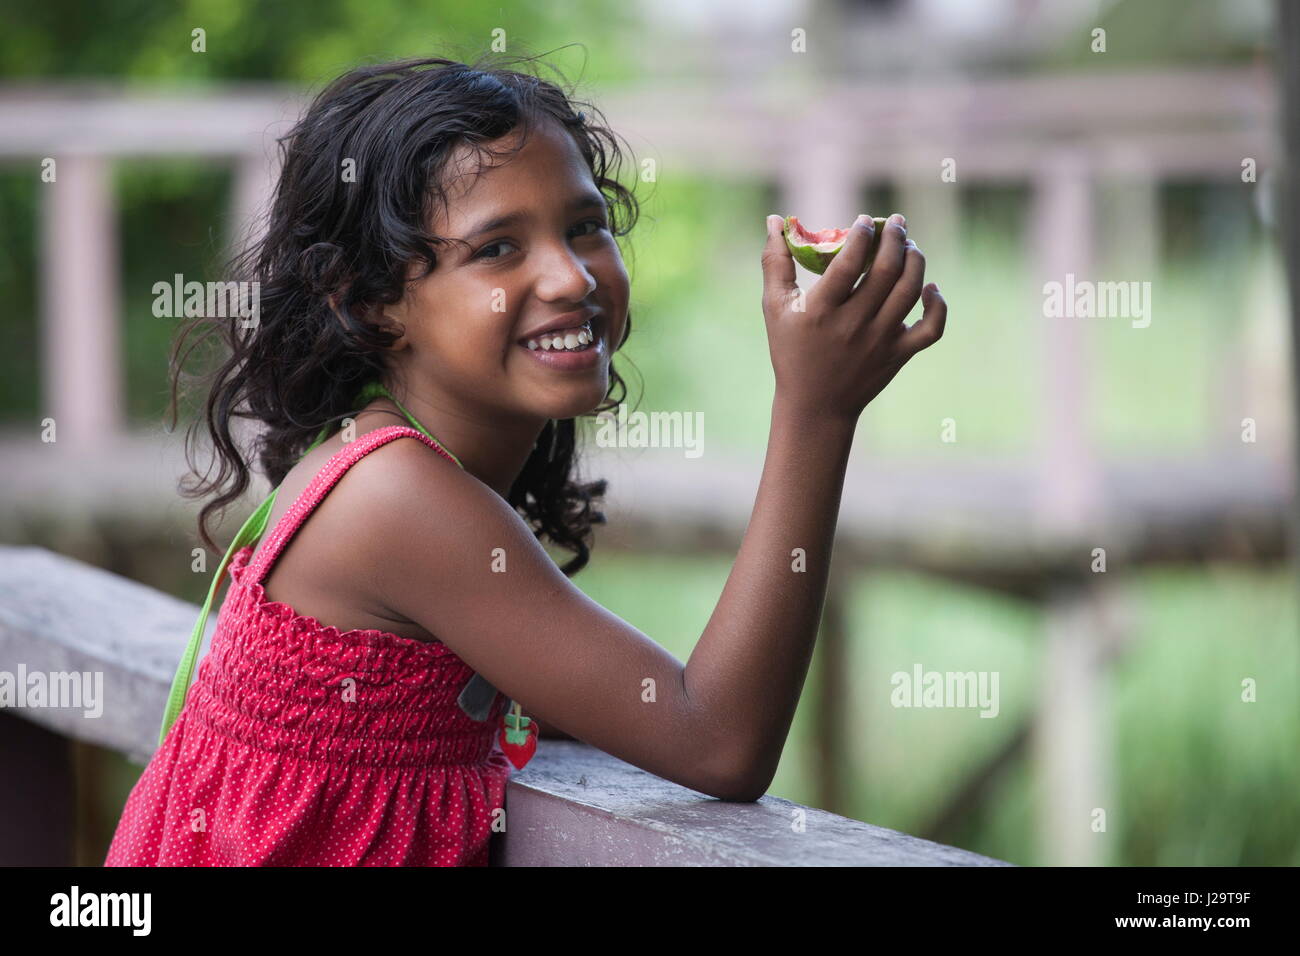 Brazil, Amapa, Smiling 8-year-old girl eating a mango Stock Photo